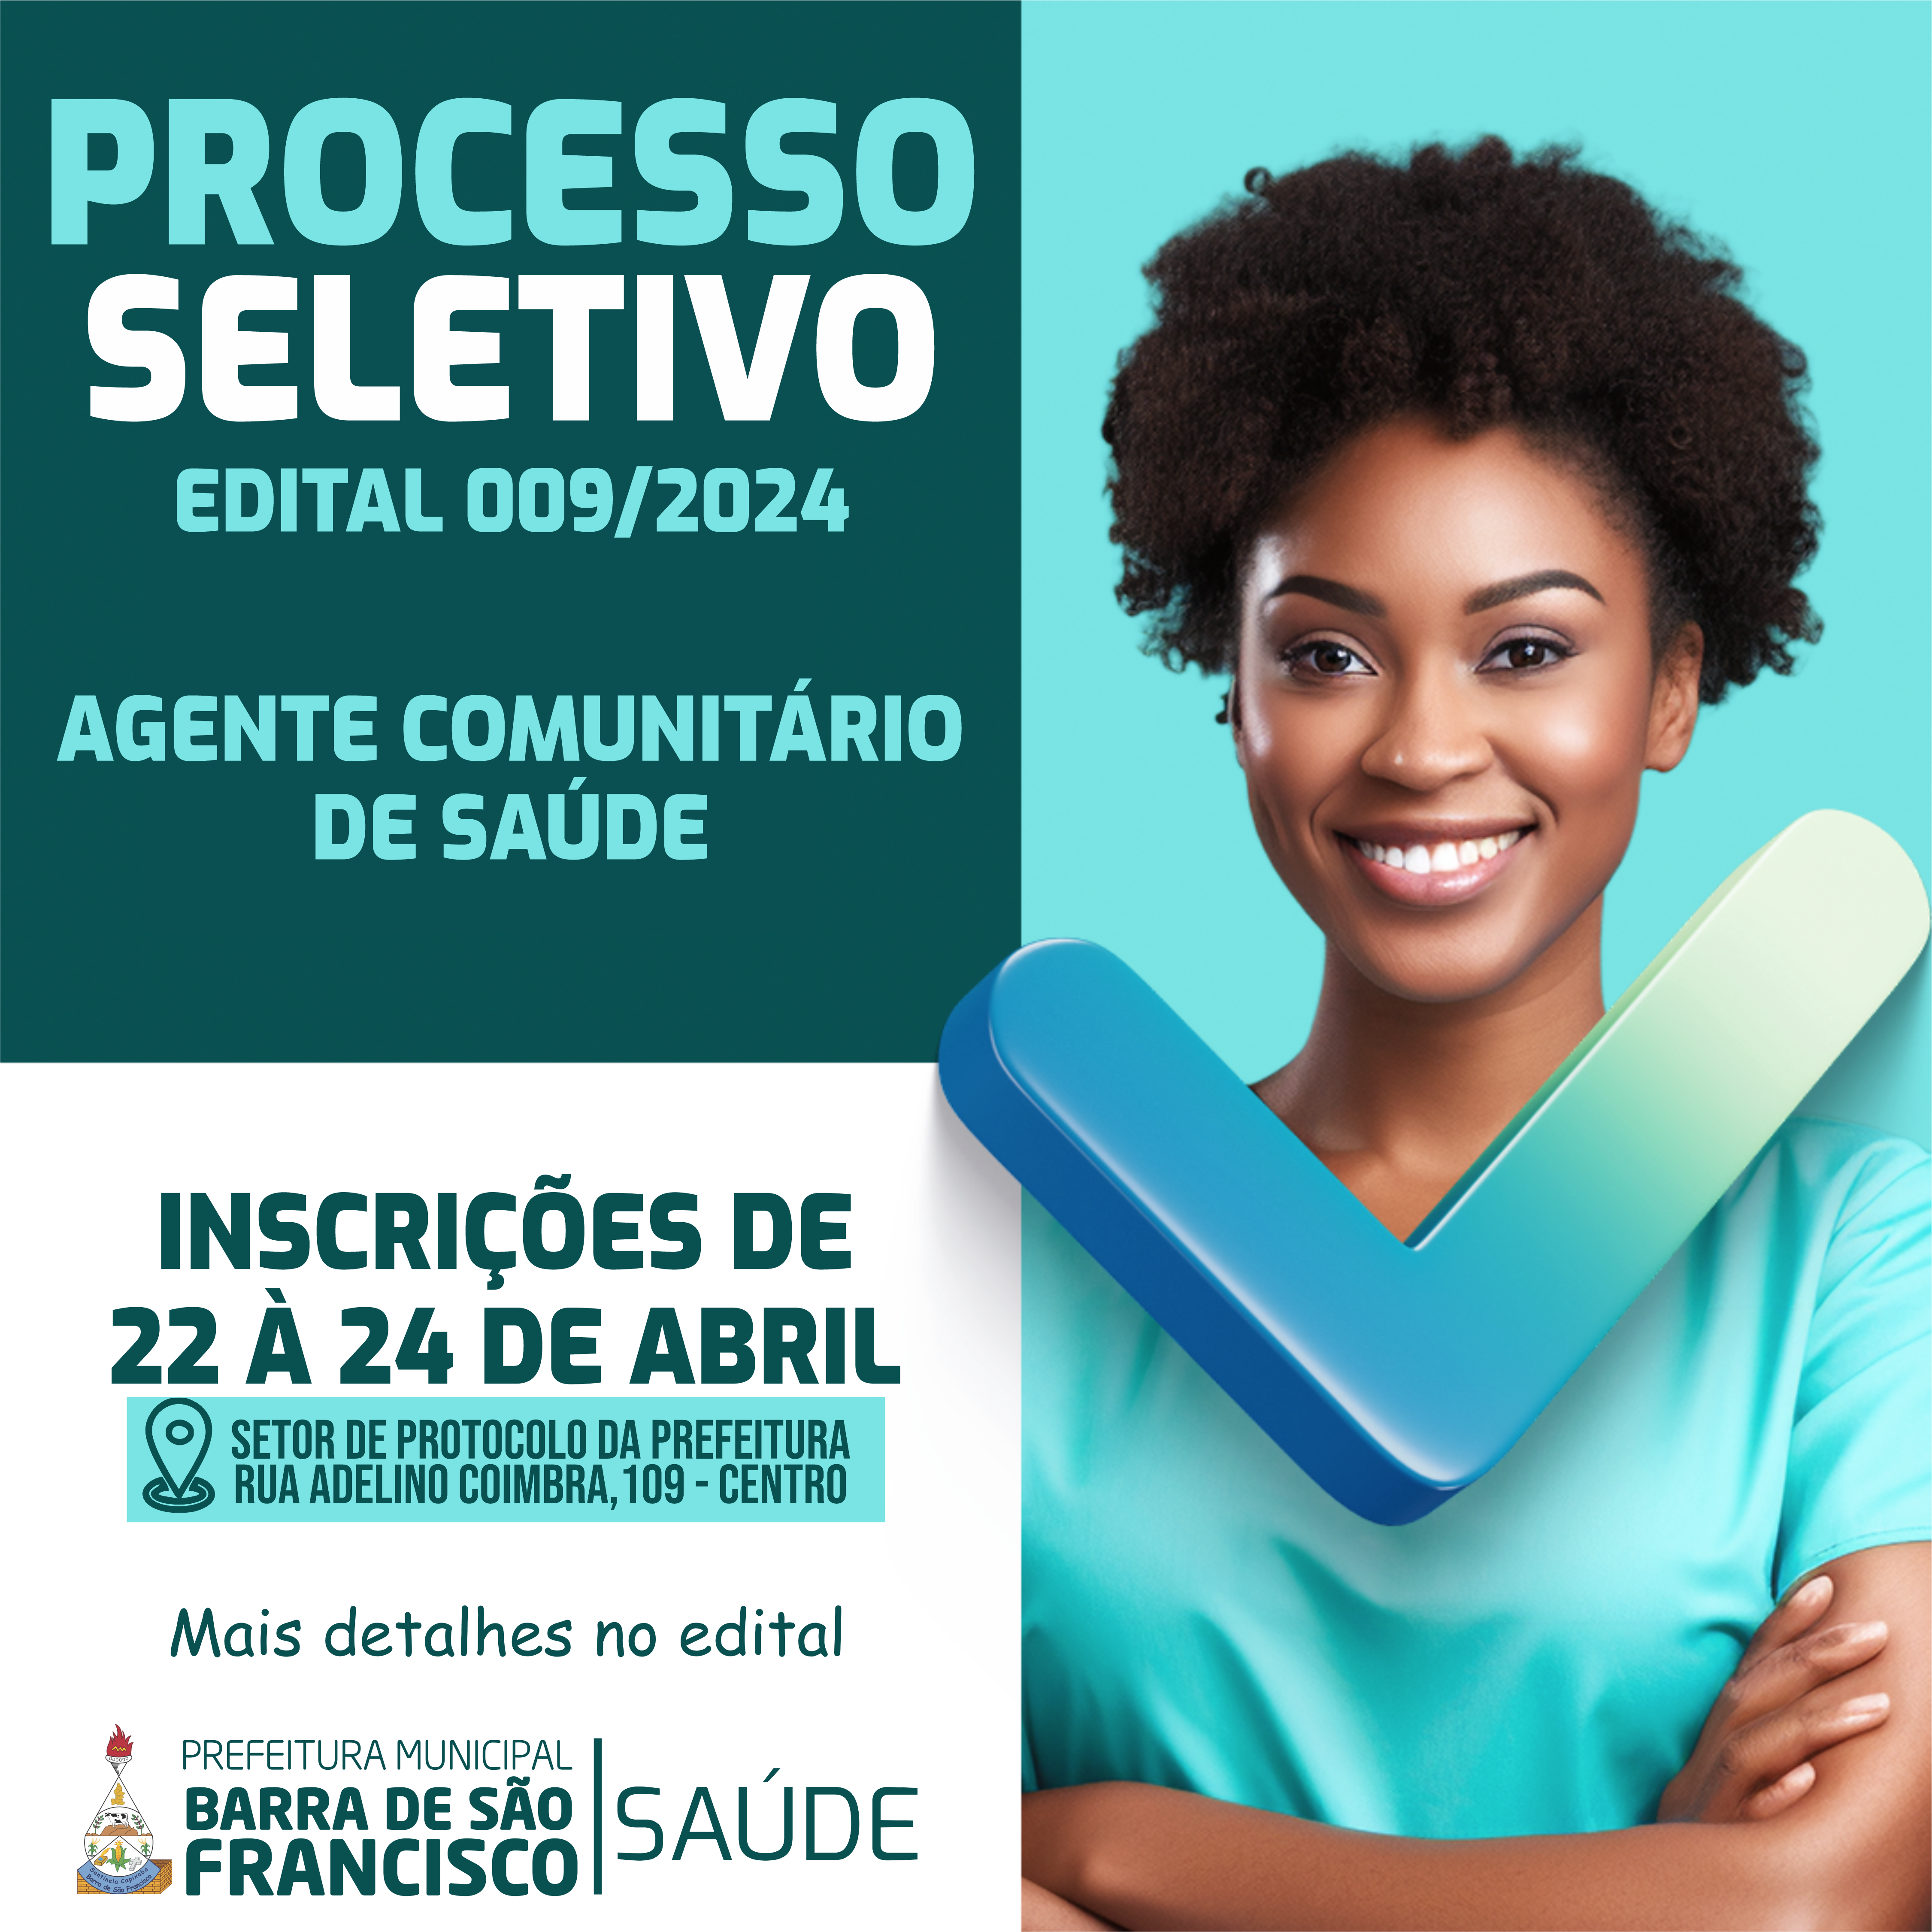 EDITAL DE ABERTURA DO PROCESSO SELETIVO PÚBLICO Nº. 009 - AGENTE COMUNITÁRIO DE SAÚDE